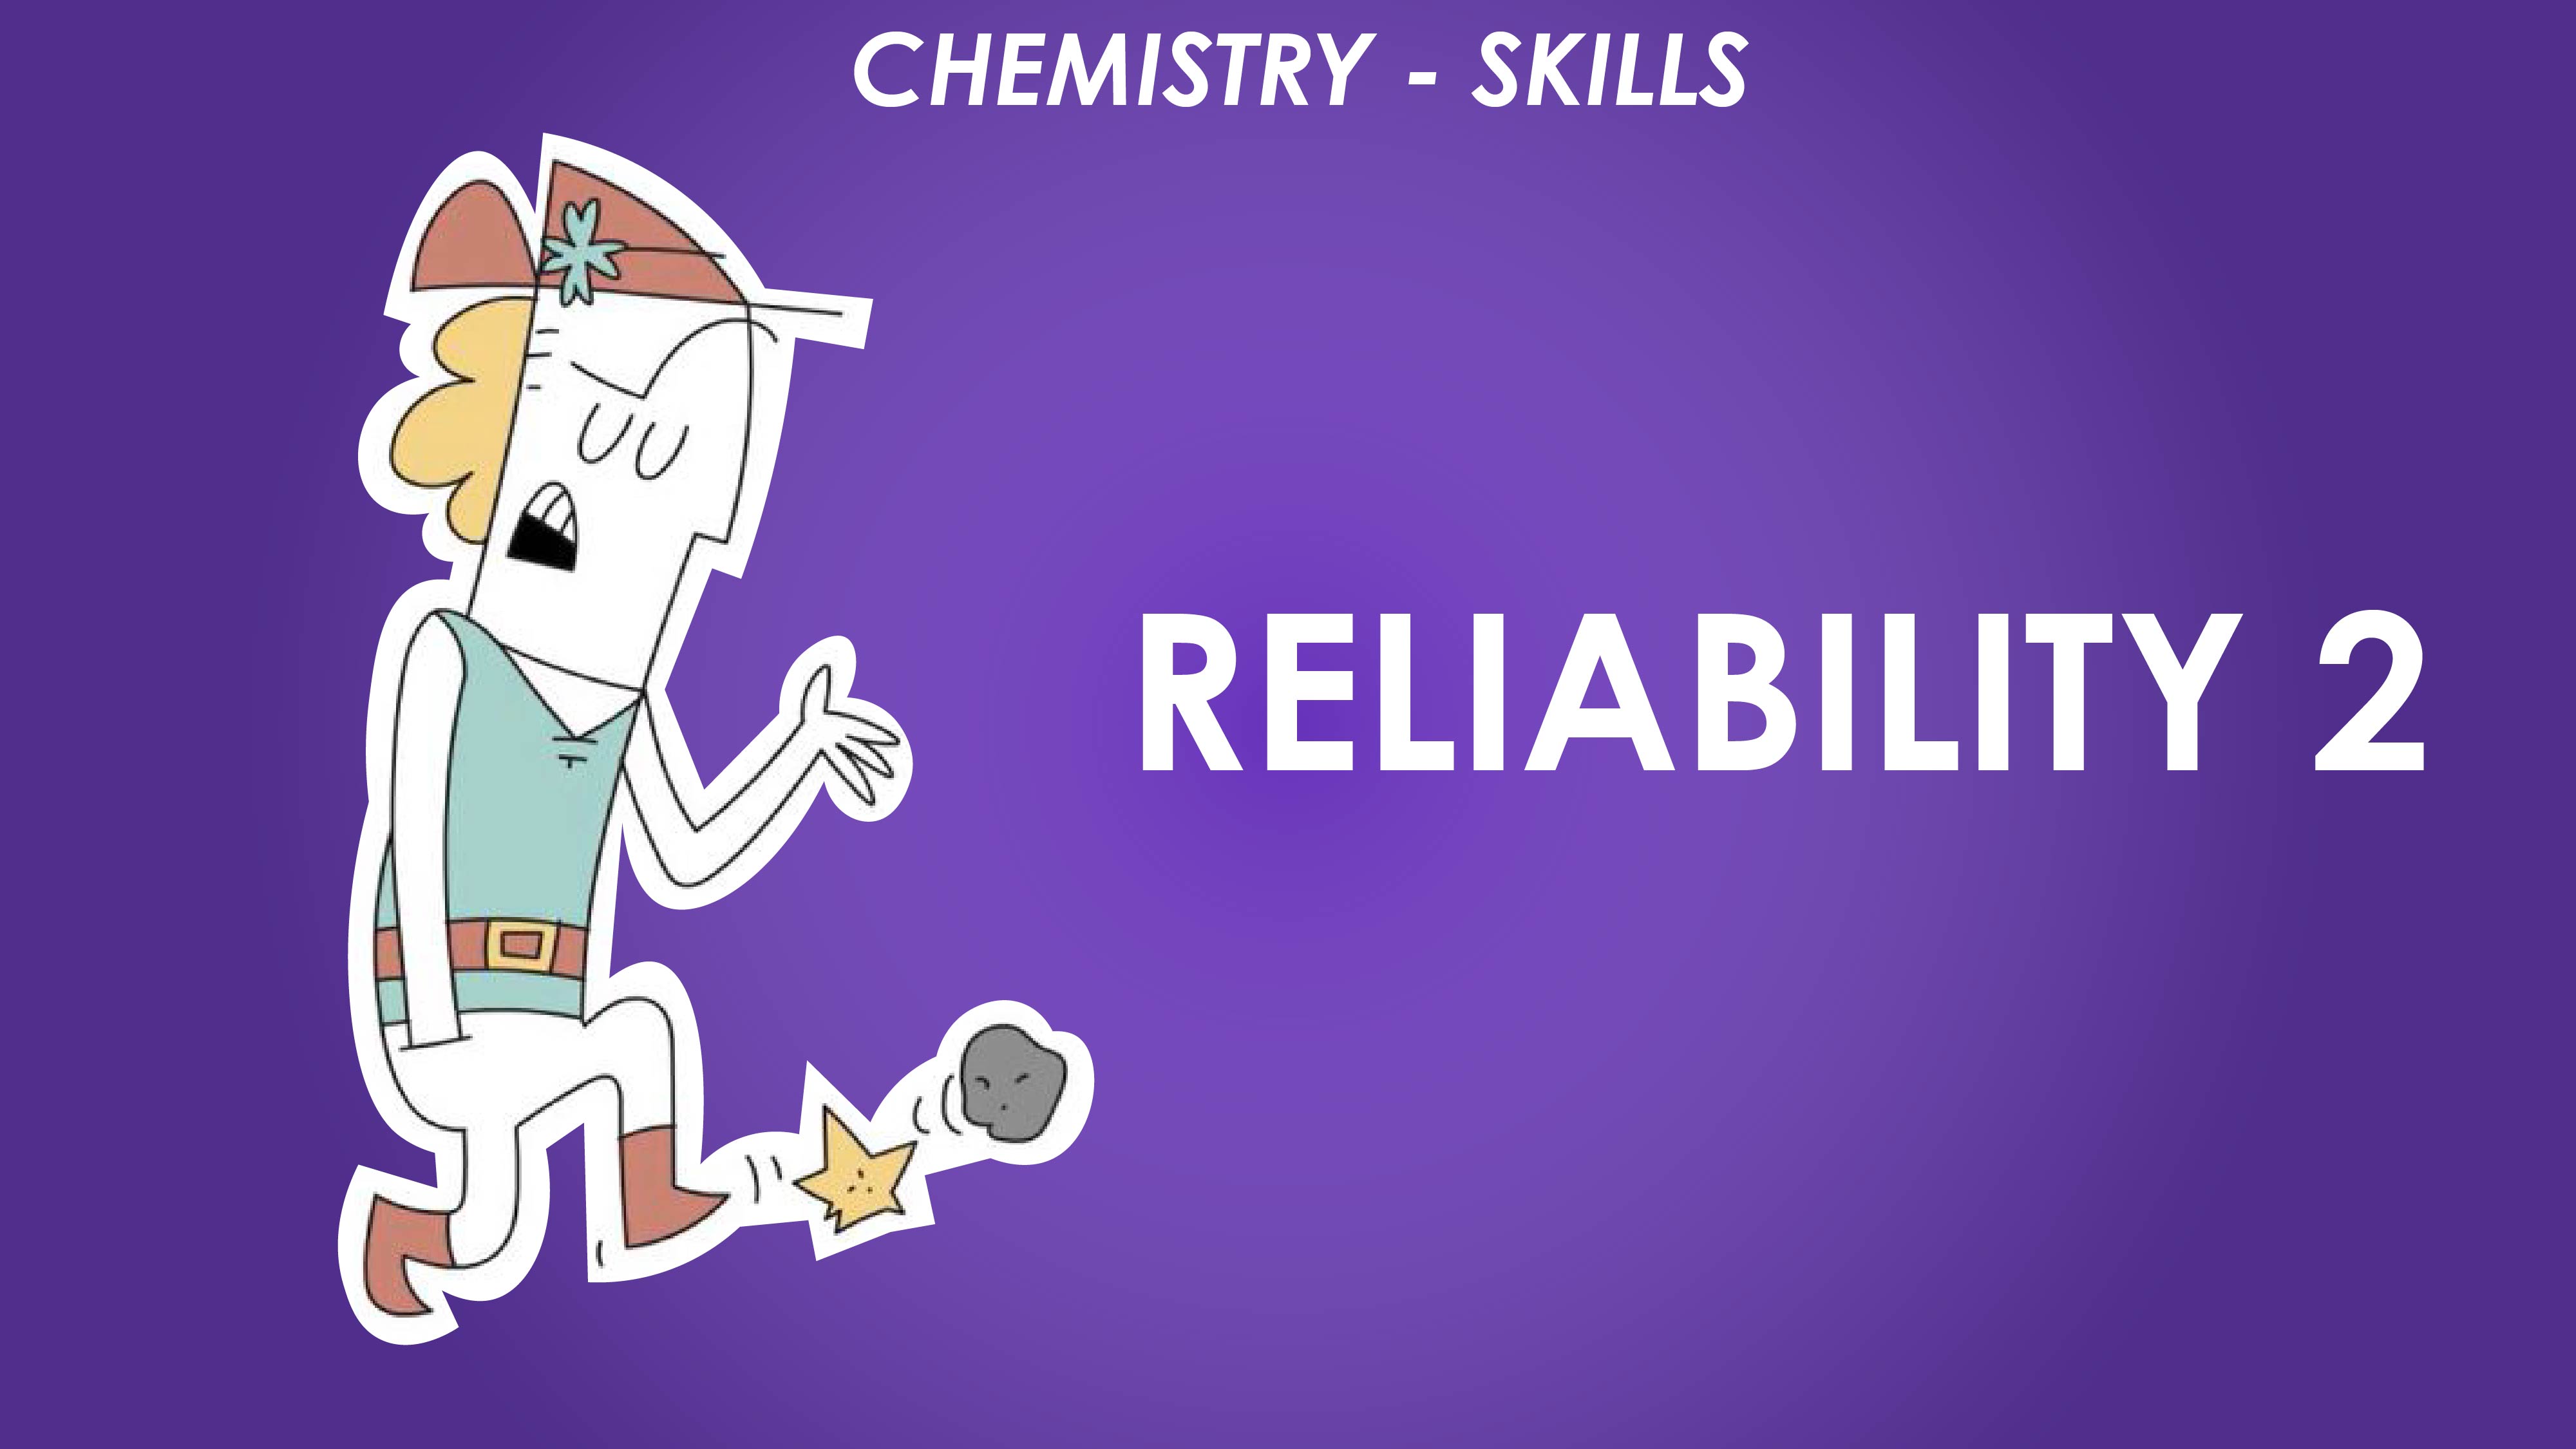 Reliability 2 - Chemistry Skills